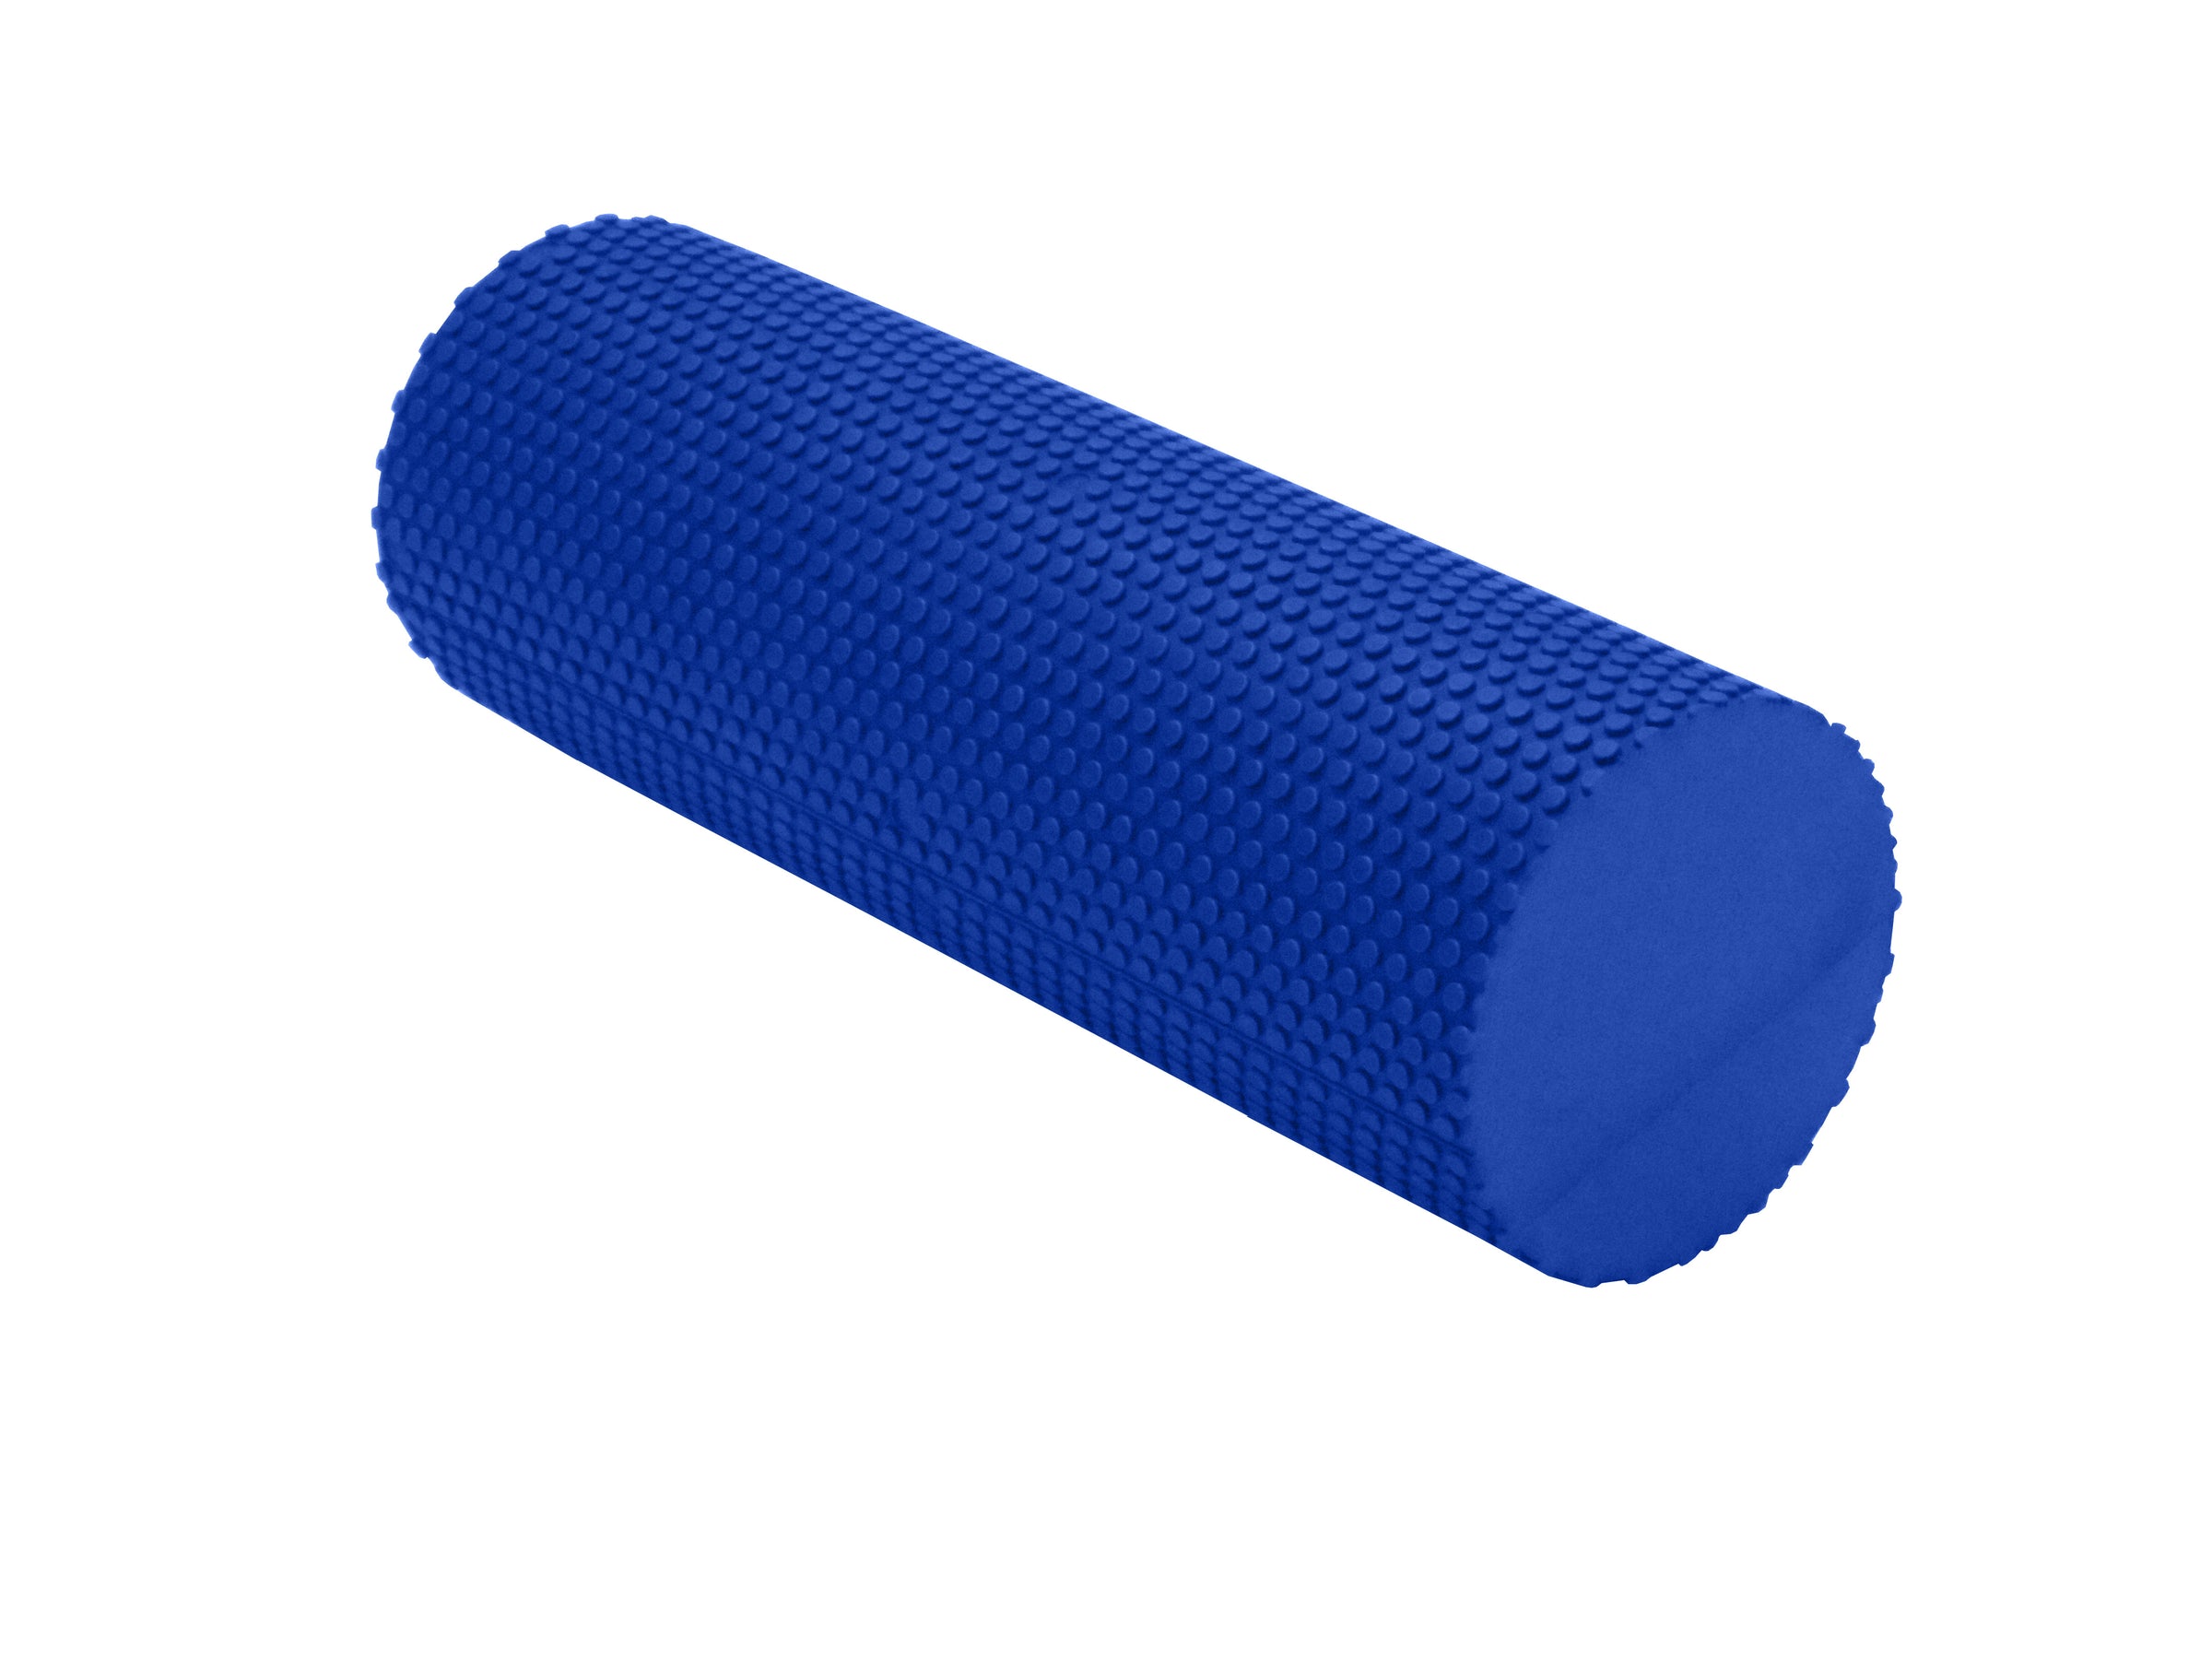 Bumpy foam roller V2 - 14 cm